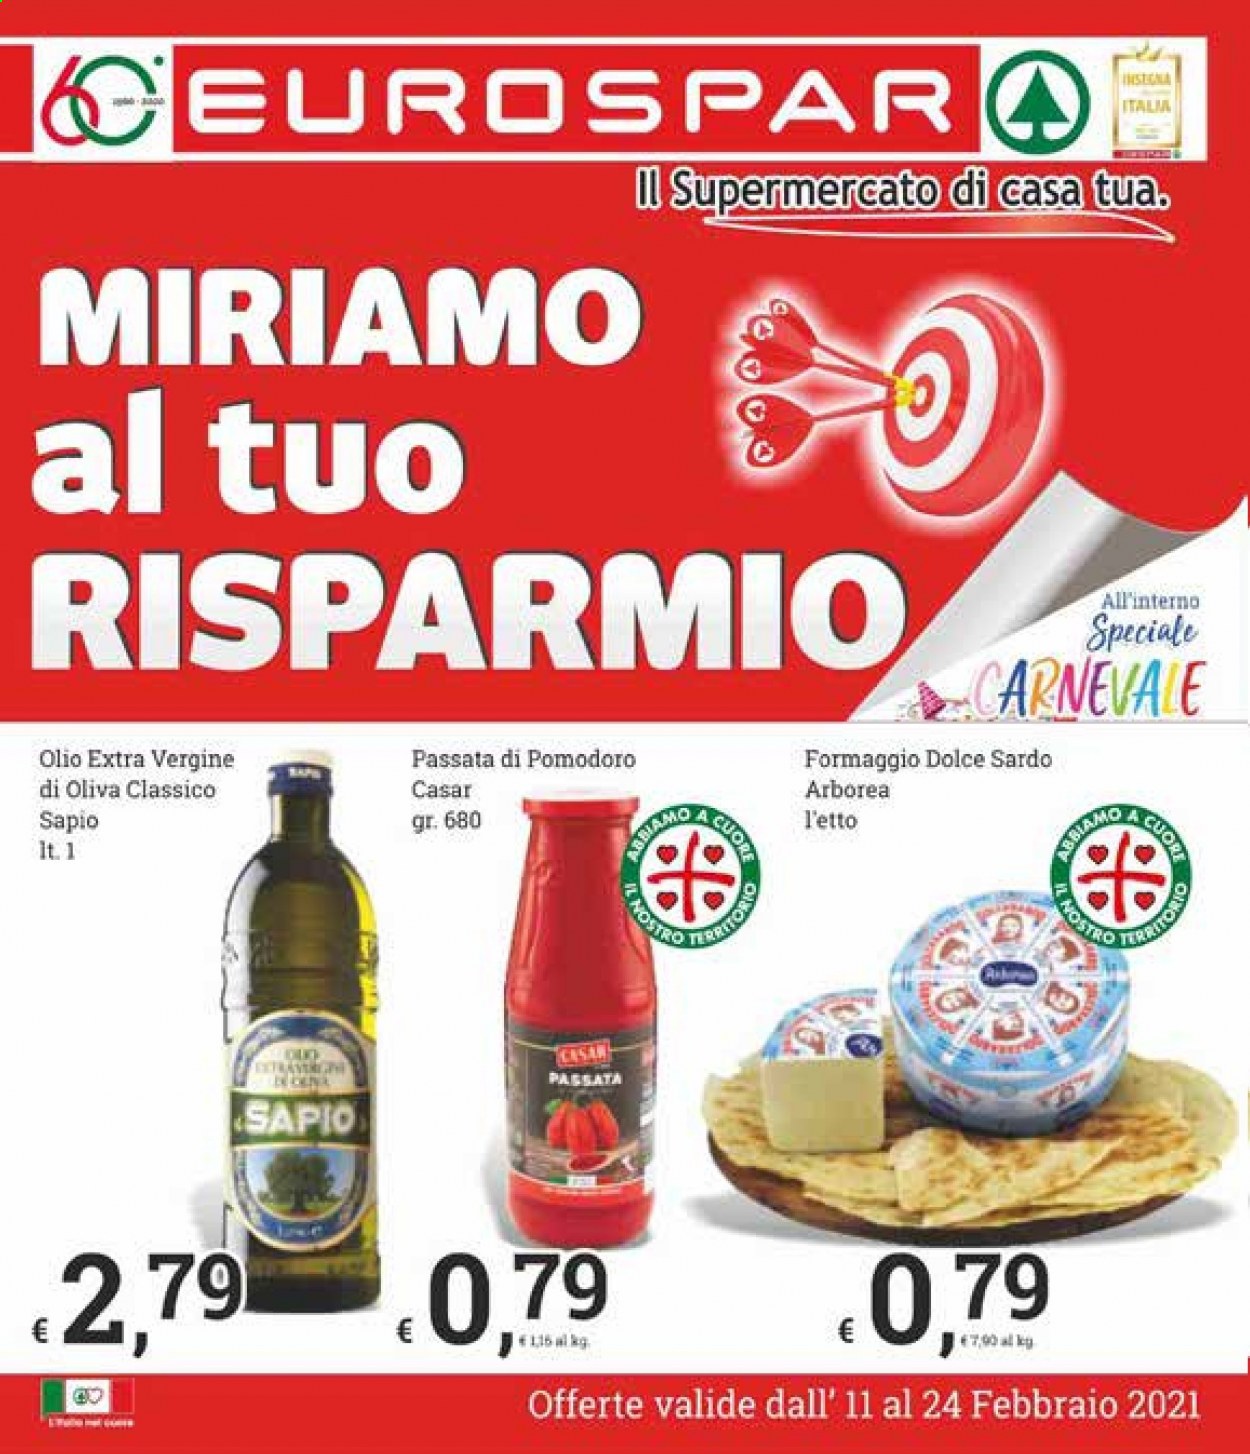 thumbnail - Volantino Eurospar - 11/2/2021 - 24/2/2021 - Prodotti in offerta - formaggio, Arborea, passata di pomodoro. Pagina 1.